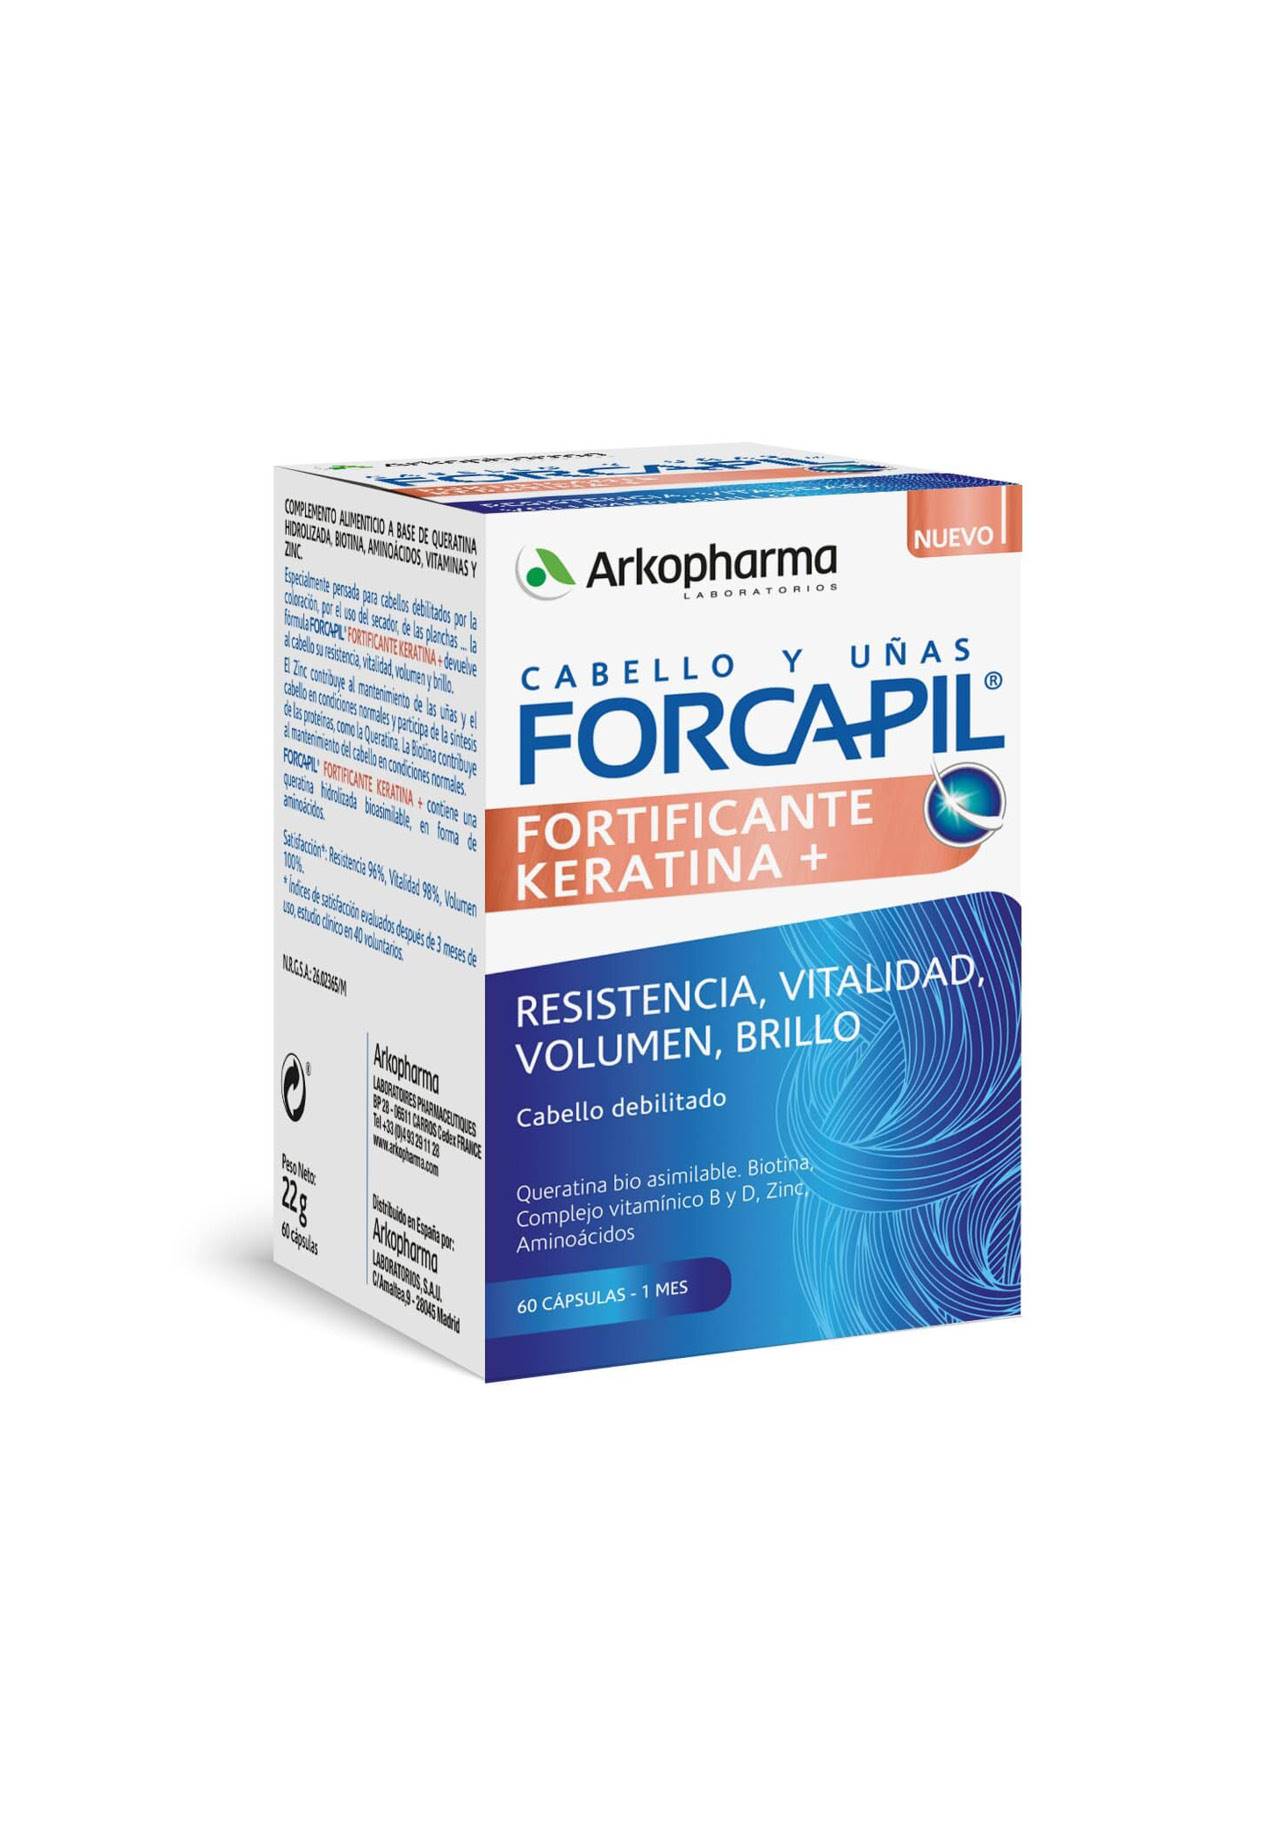 Complementos alimenticios Forcapil Fortificante Keratina+ de Arkopharma Vitaminas para el pelo